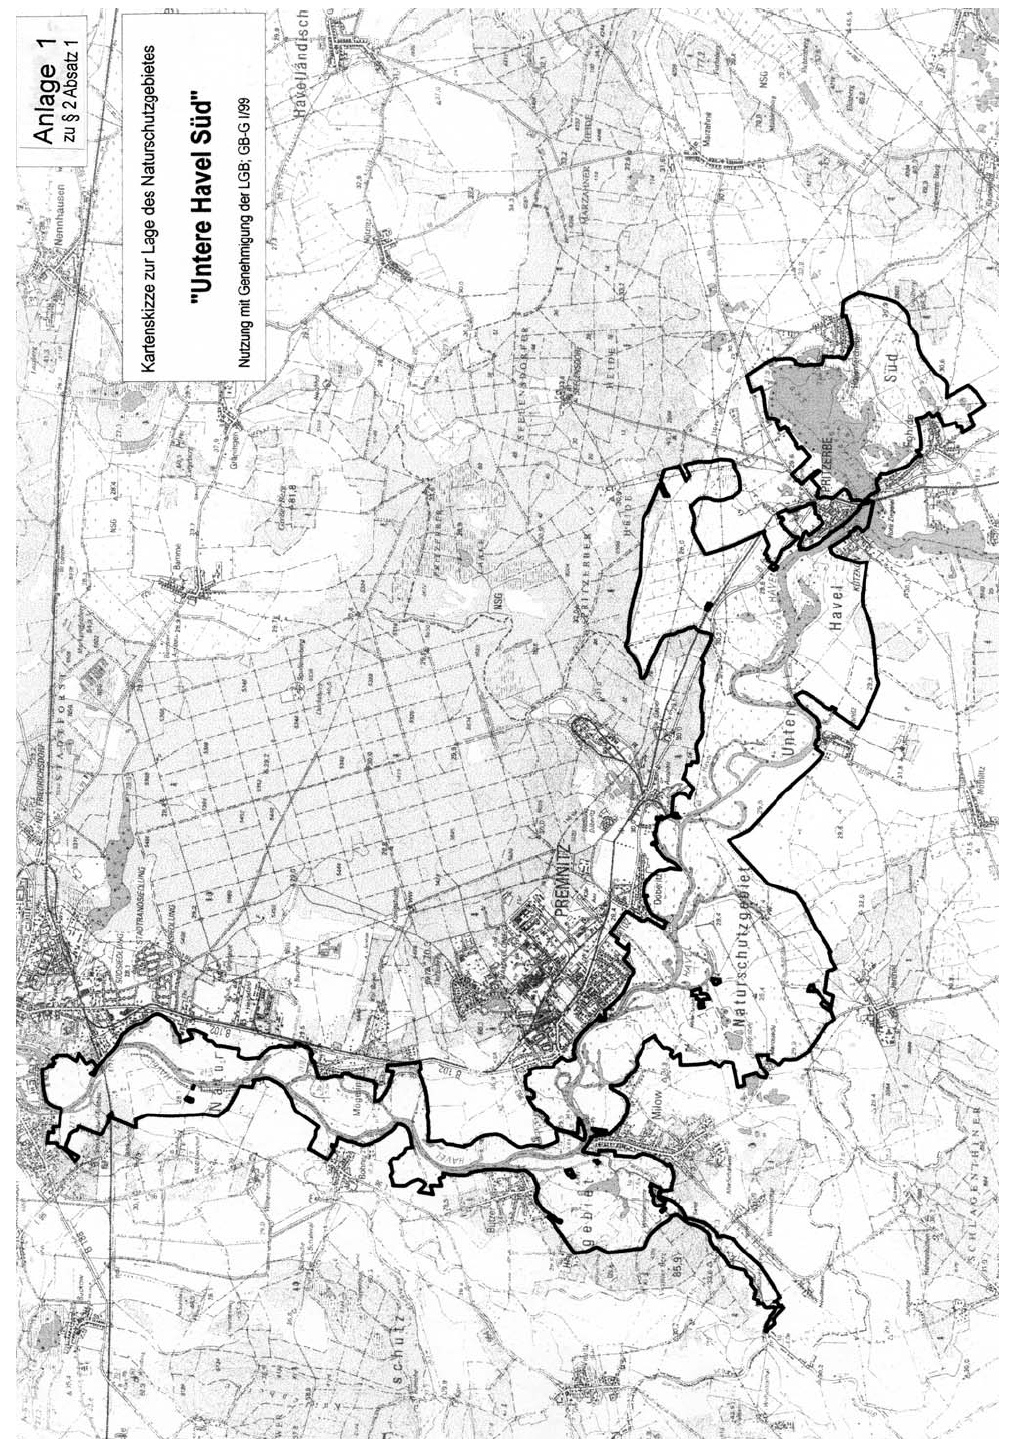 Kartenskizze zur Lage des Naturschutzgebietes "Untere Havel Süd"